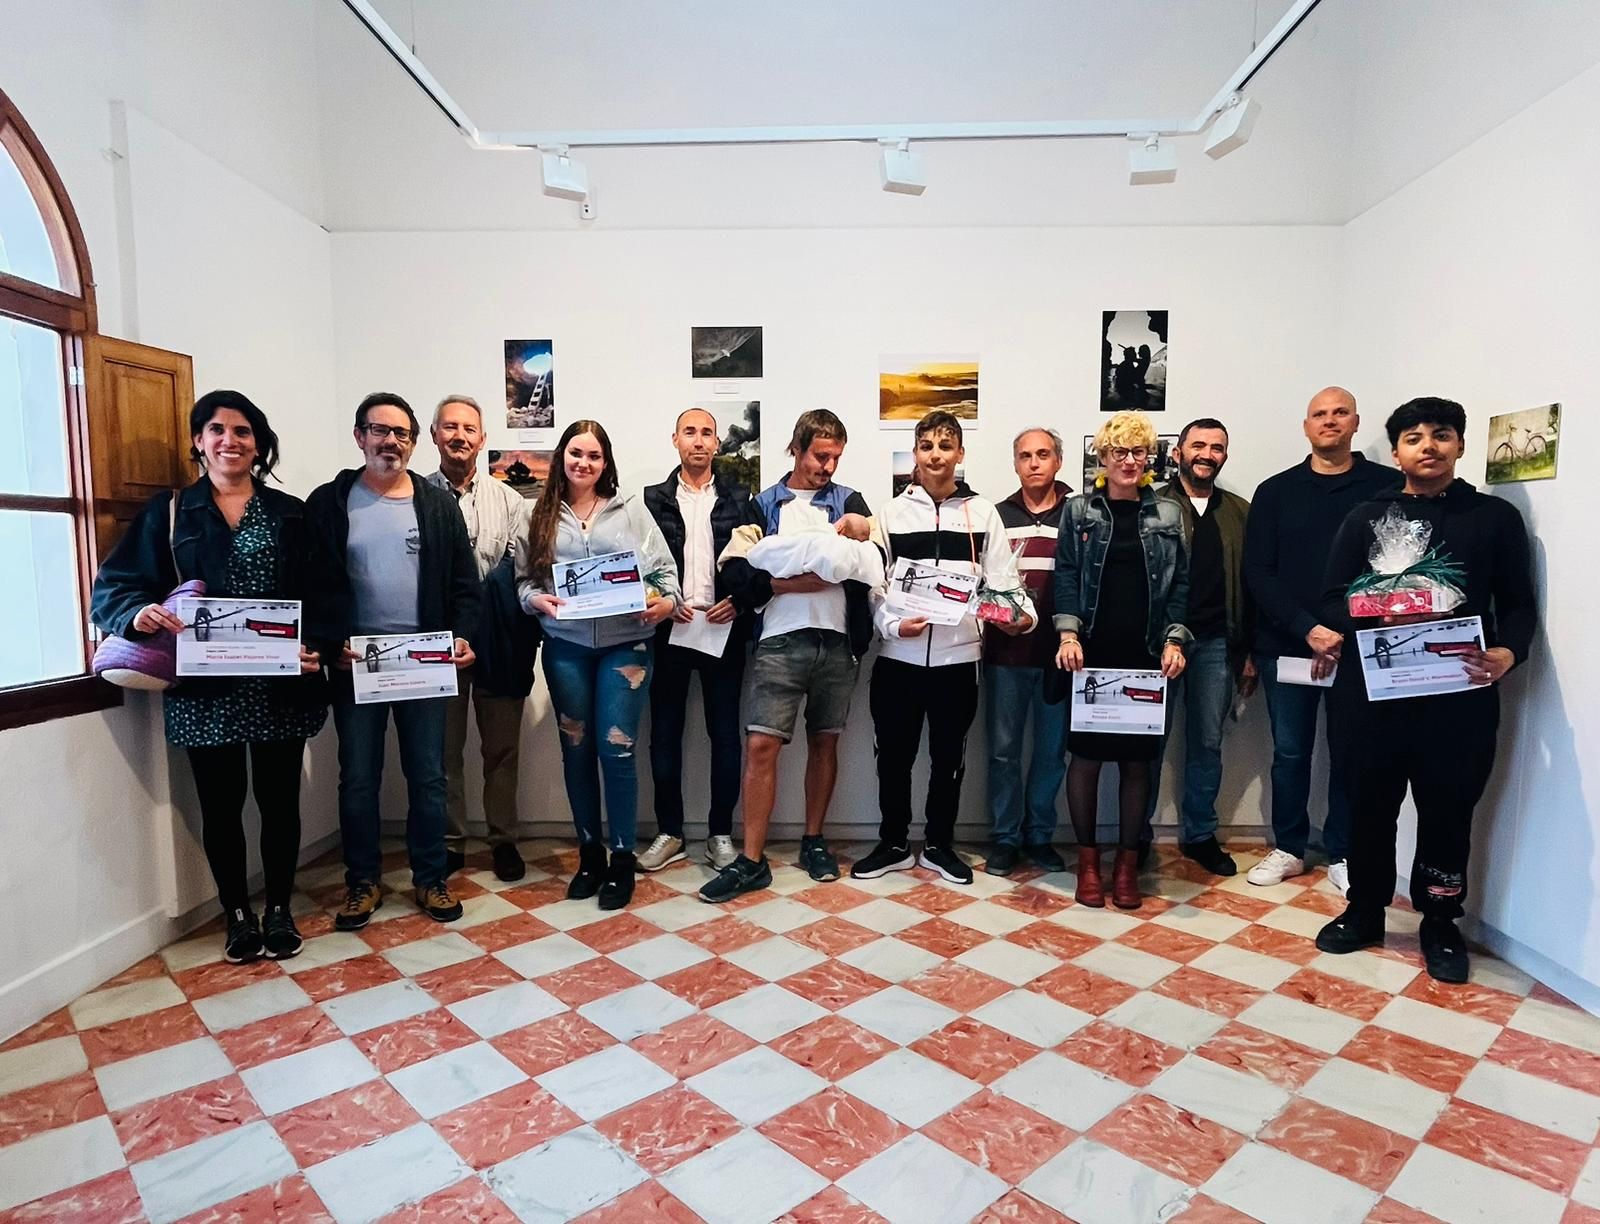 Los ganadores del XXI Concurso de Fotografía Beni Trutmann posan con sus diplomas